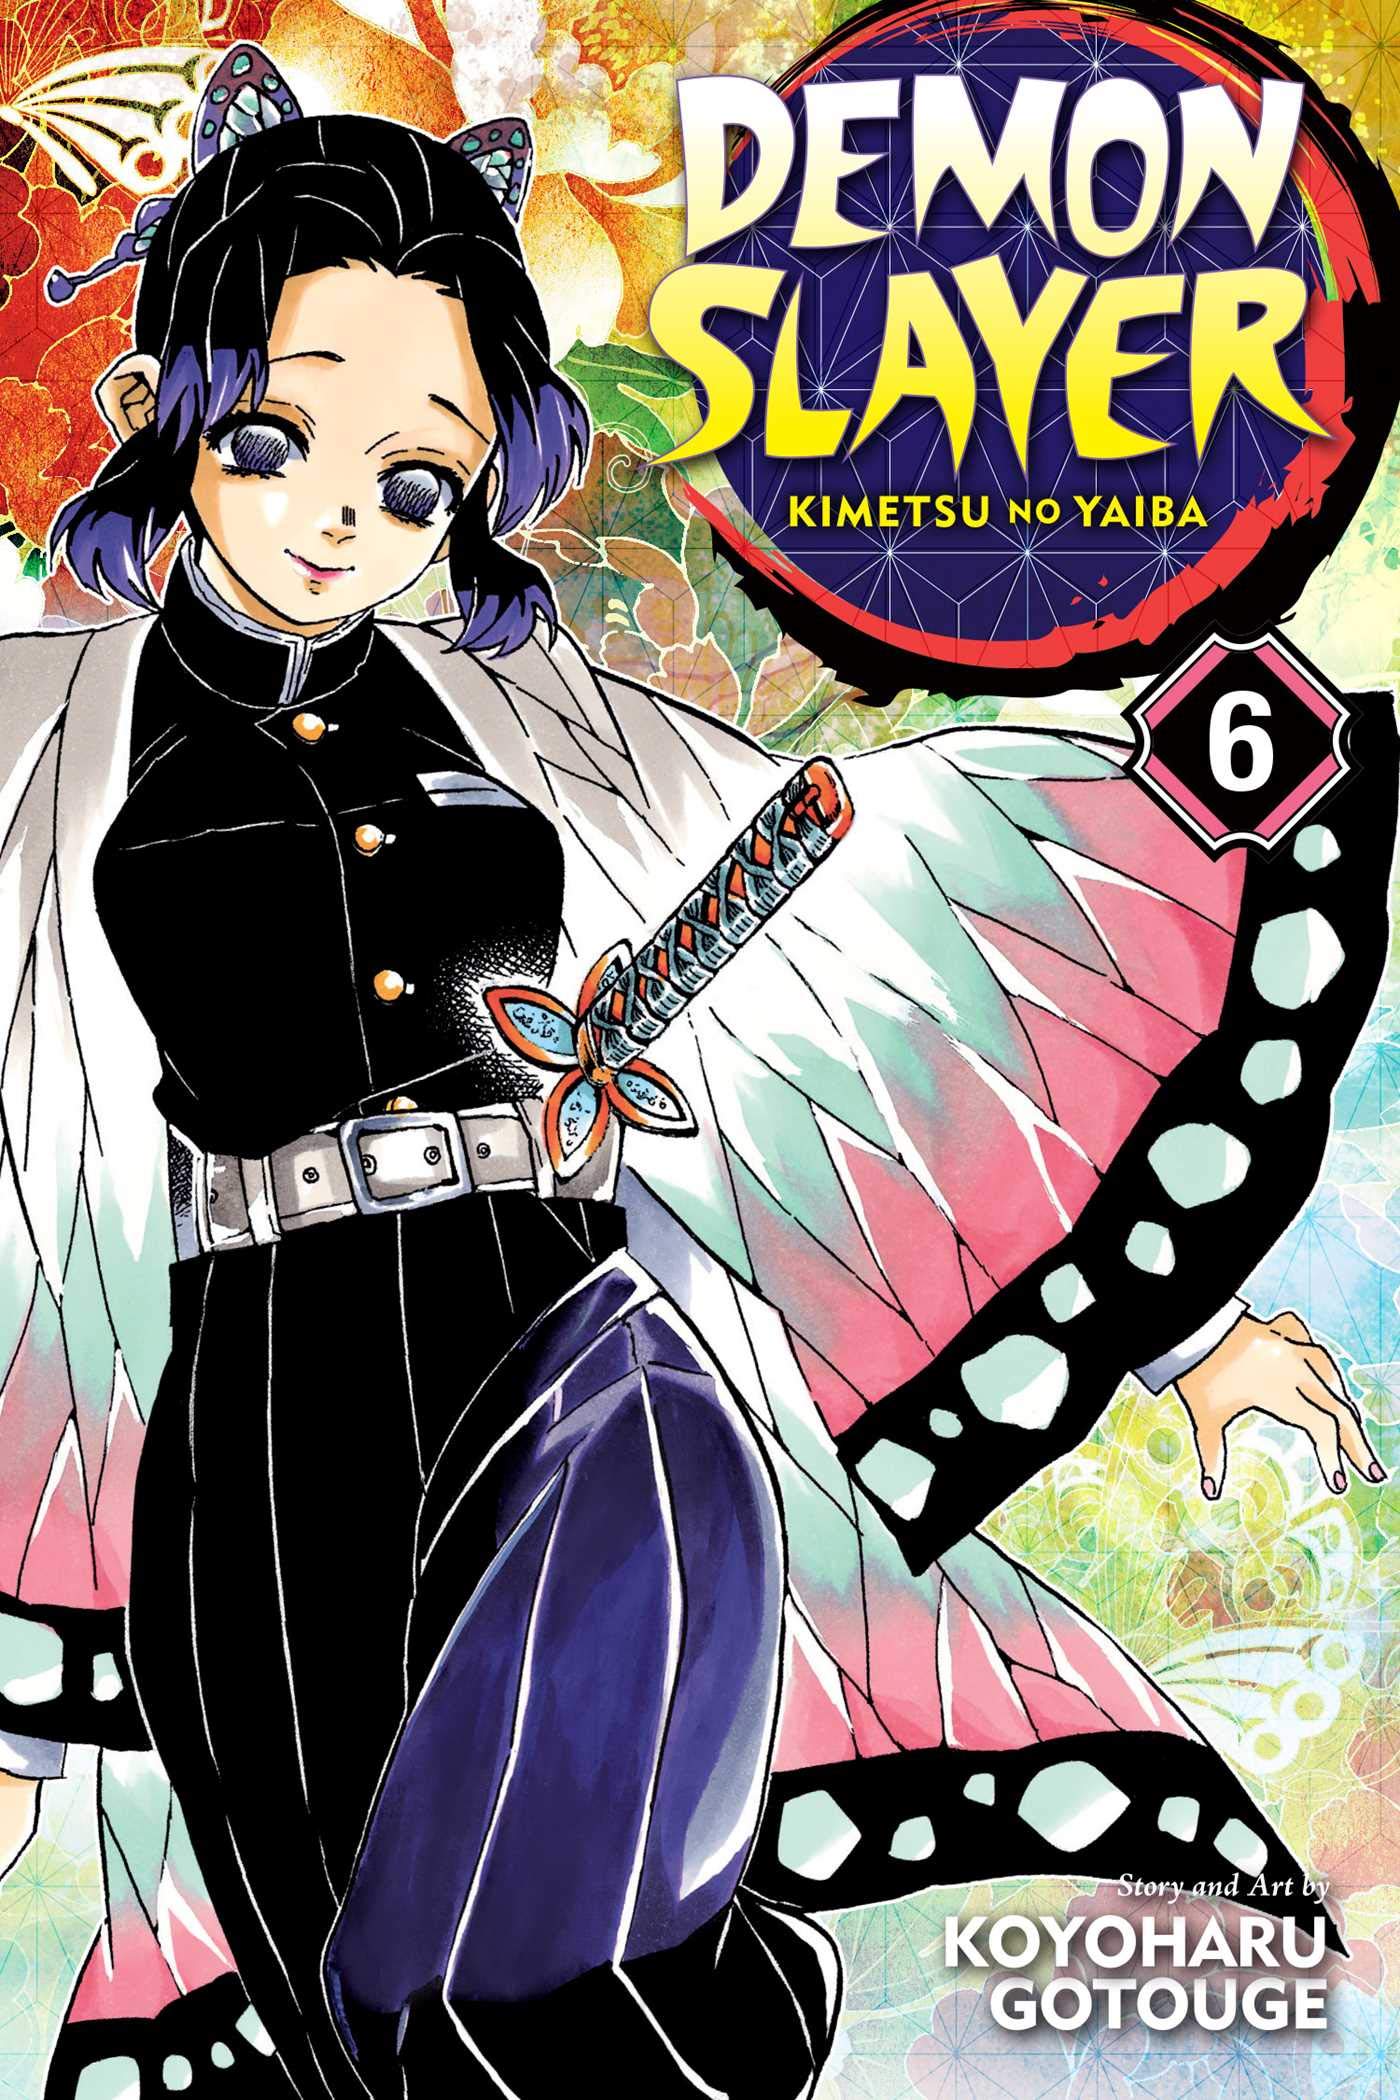 Demon Slayer: Kimetsu no Yaiba - Volume 6 | Koyoharu Gotouge